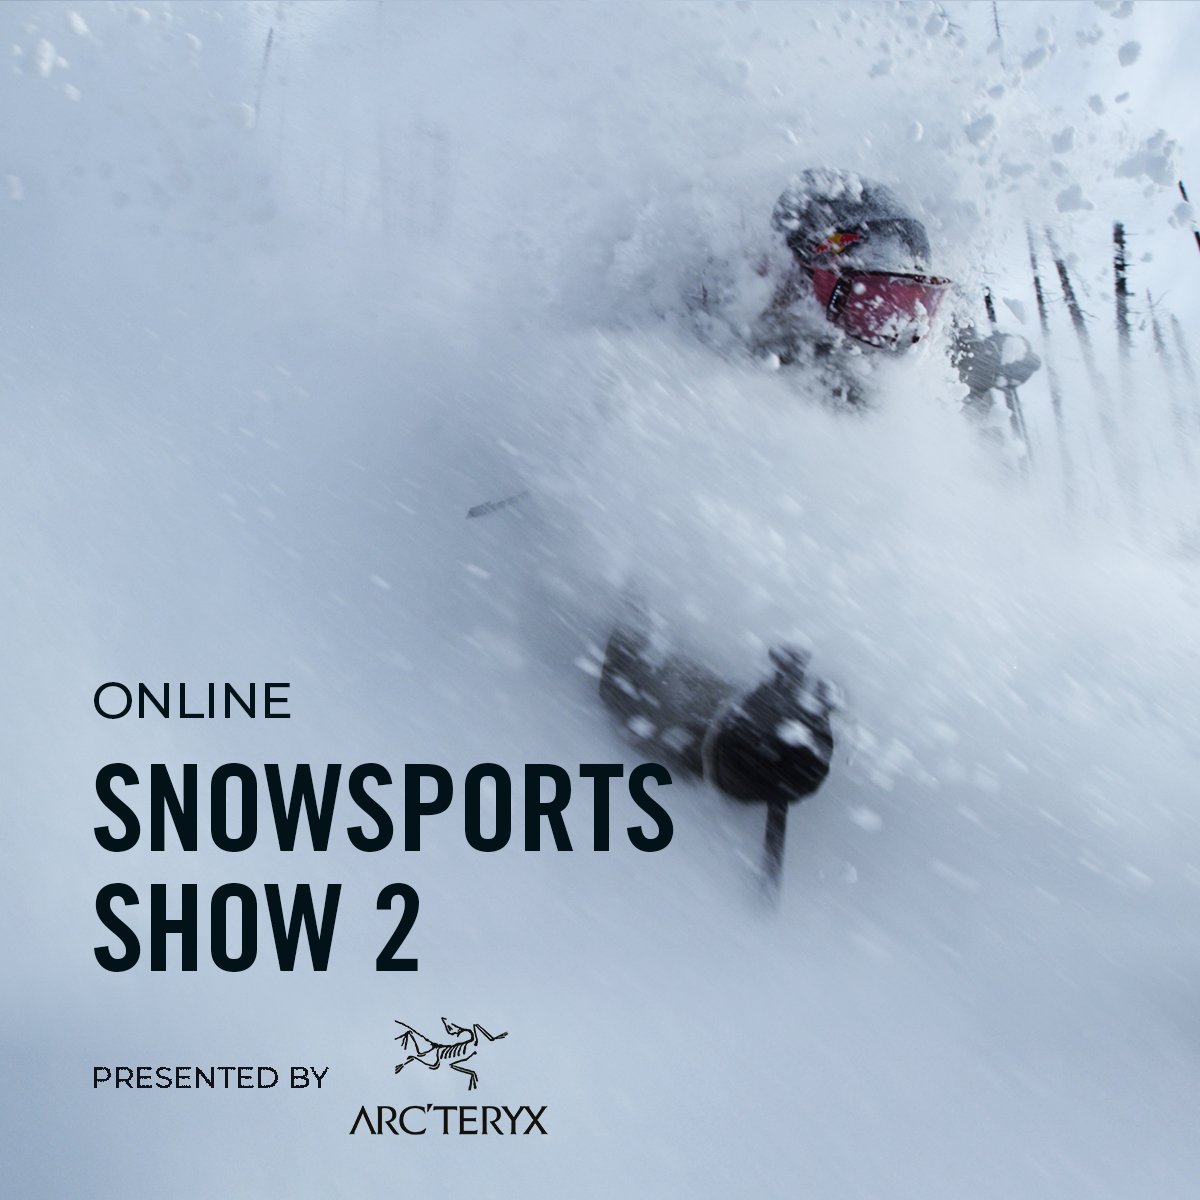 VIMFF Fall Series online snowsports show arcteryx x